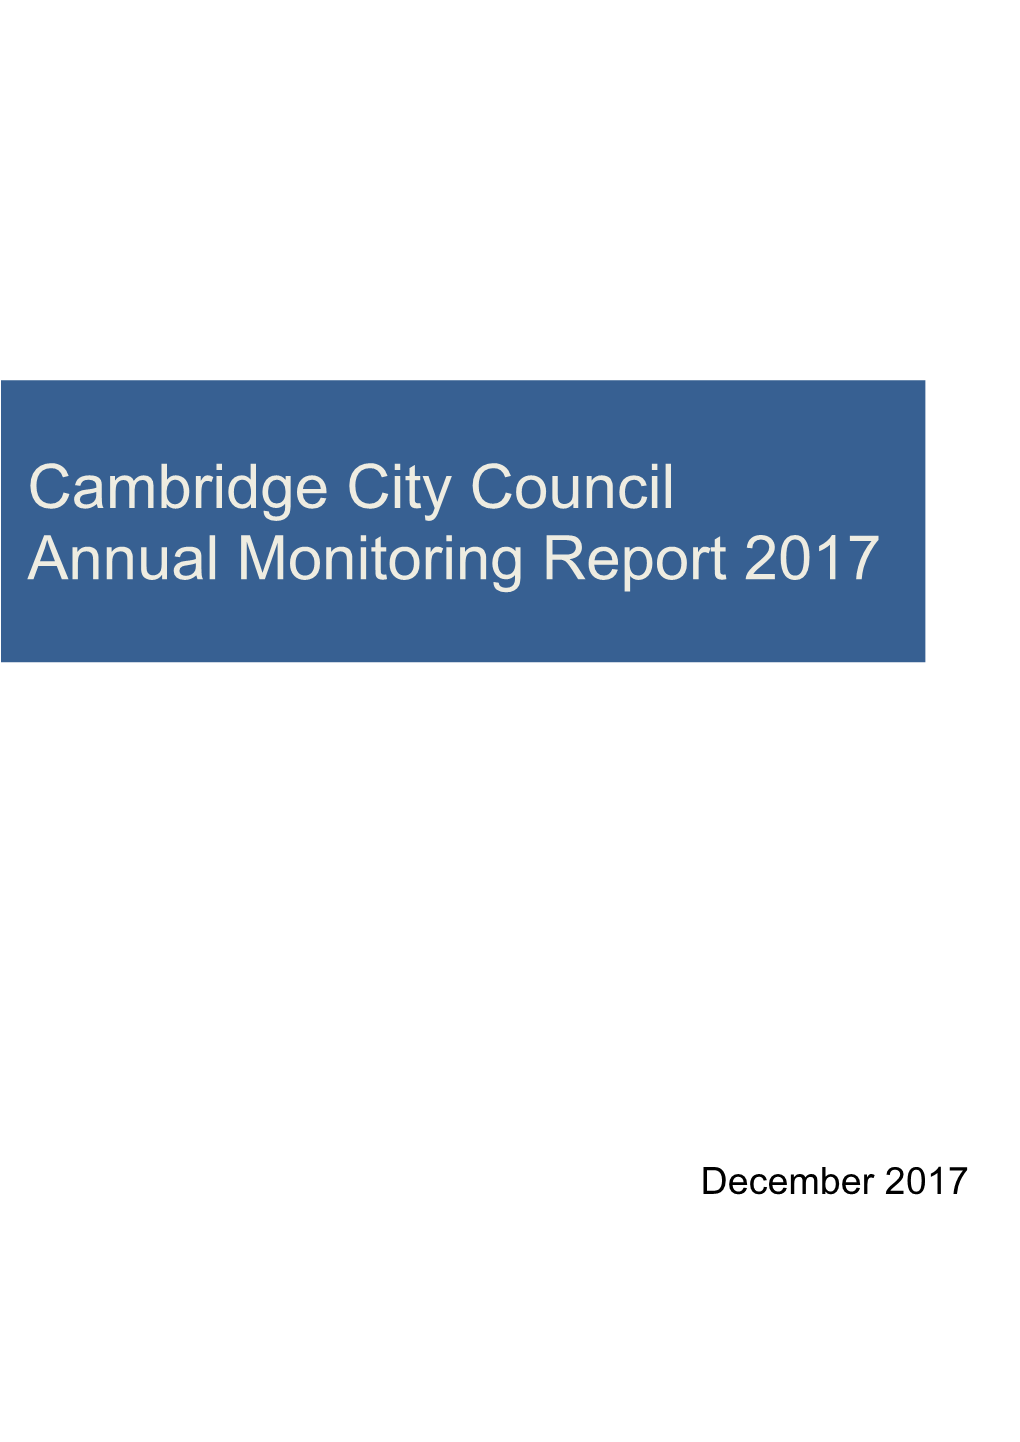 Cambridge City Council Annual Monitoring Report 2017